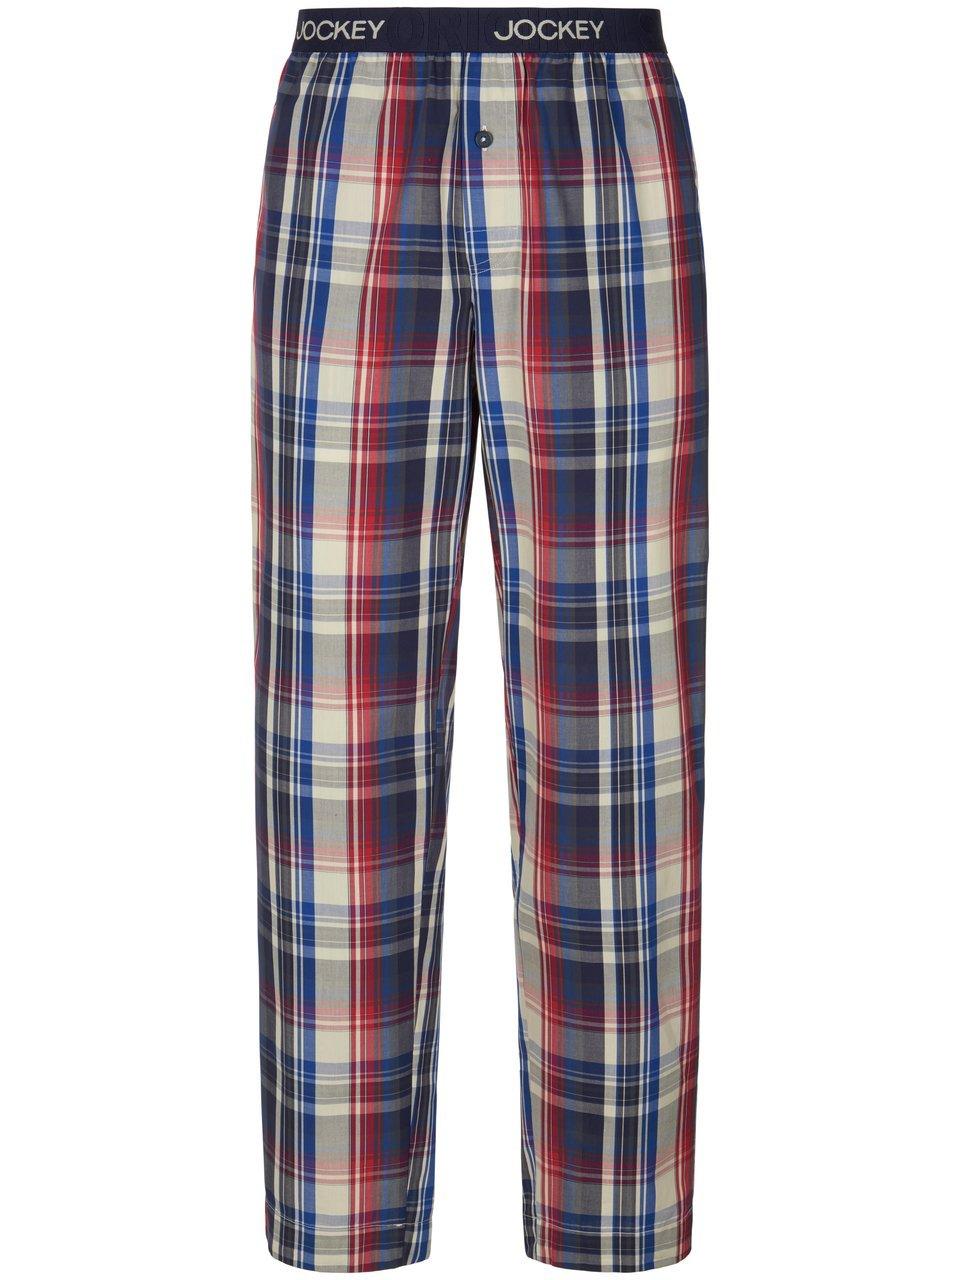 Lange pyjamabroek 100% katoen Van Jockey blauw